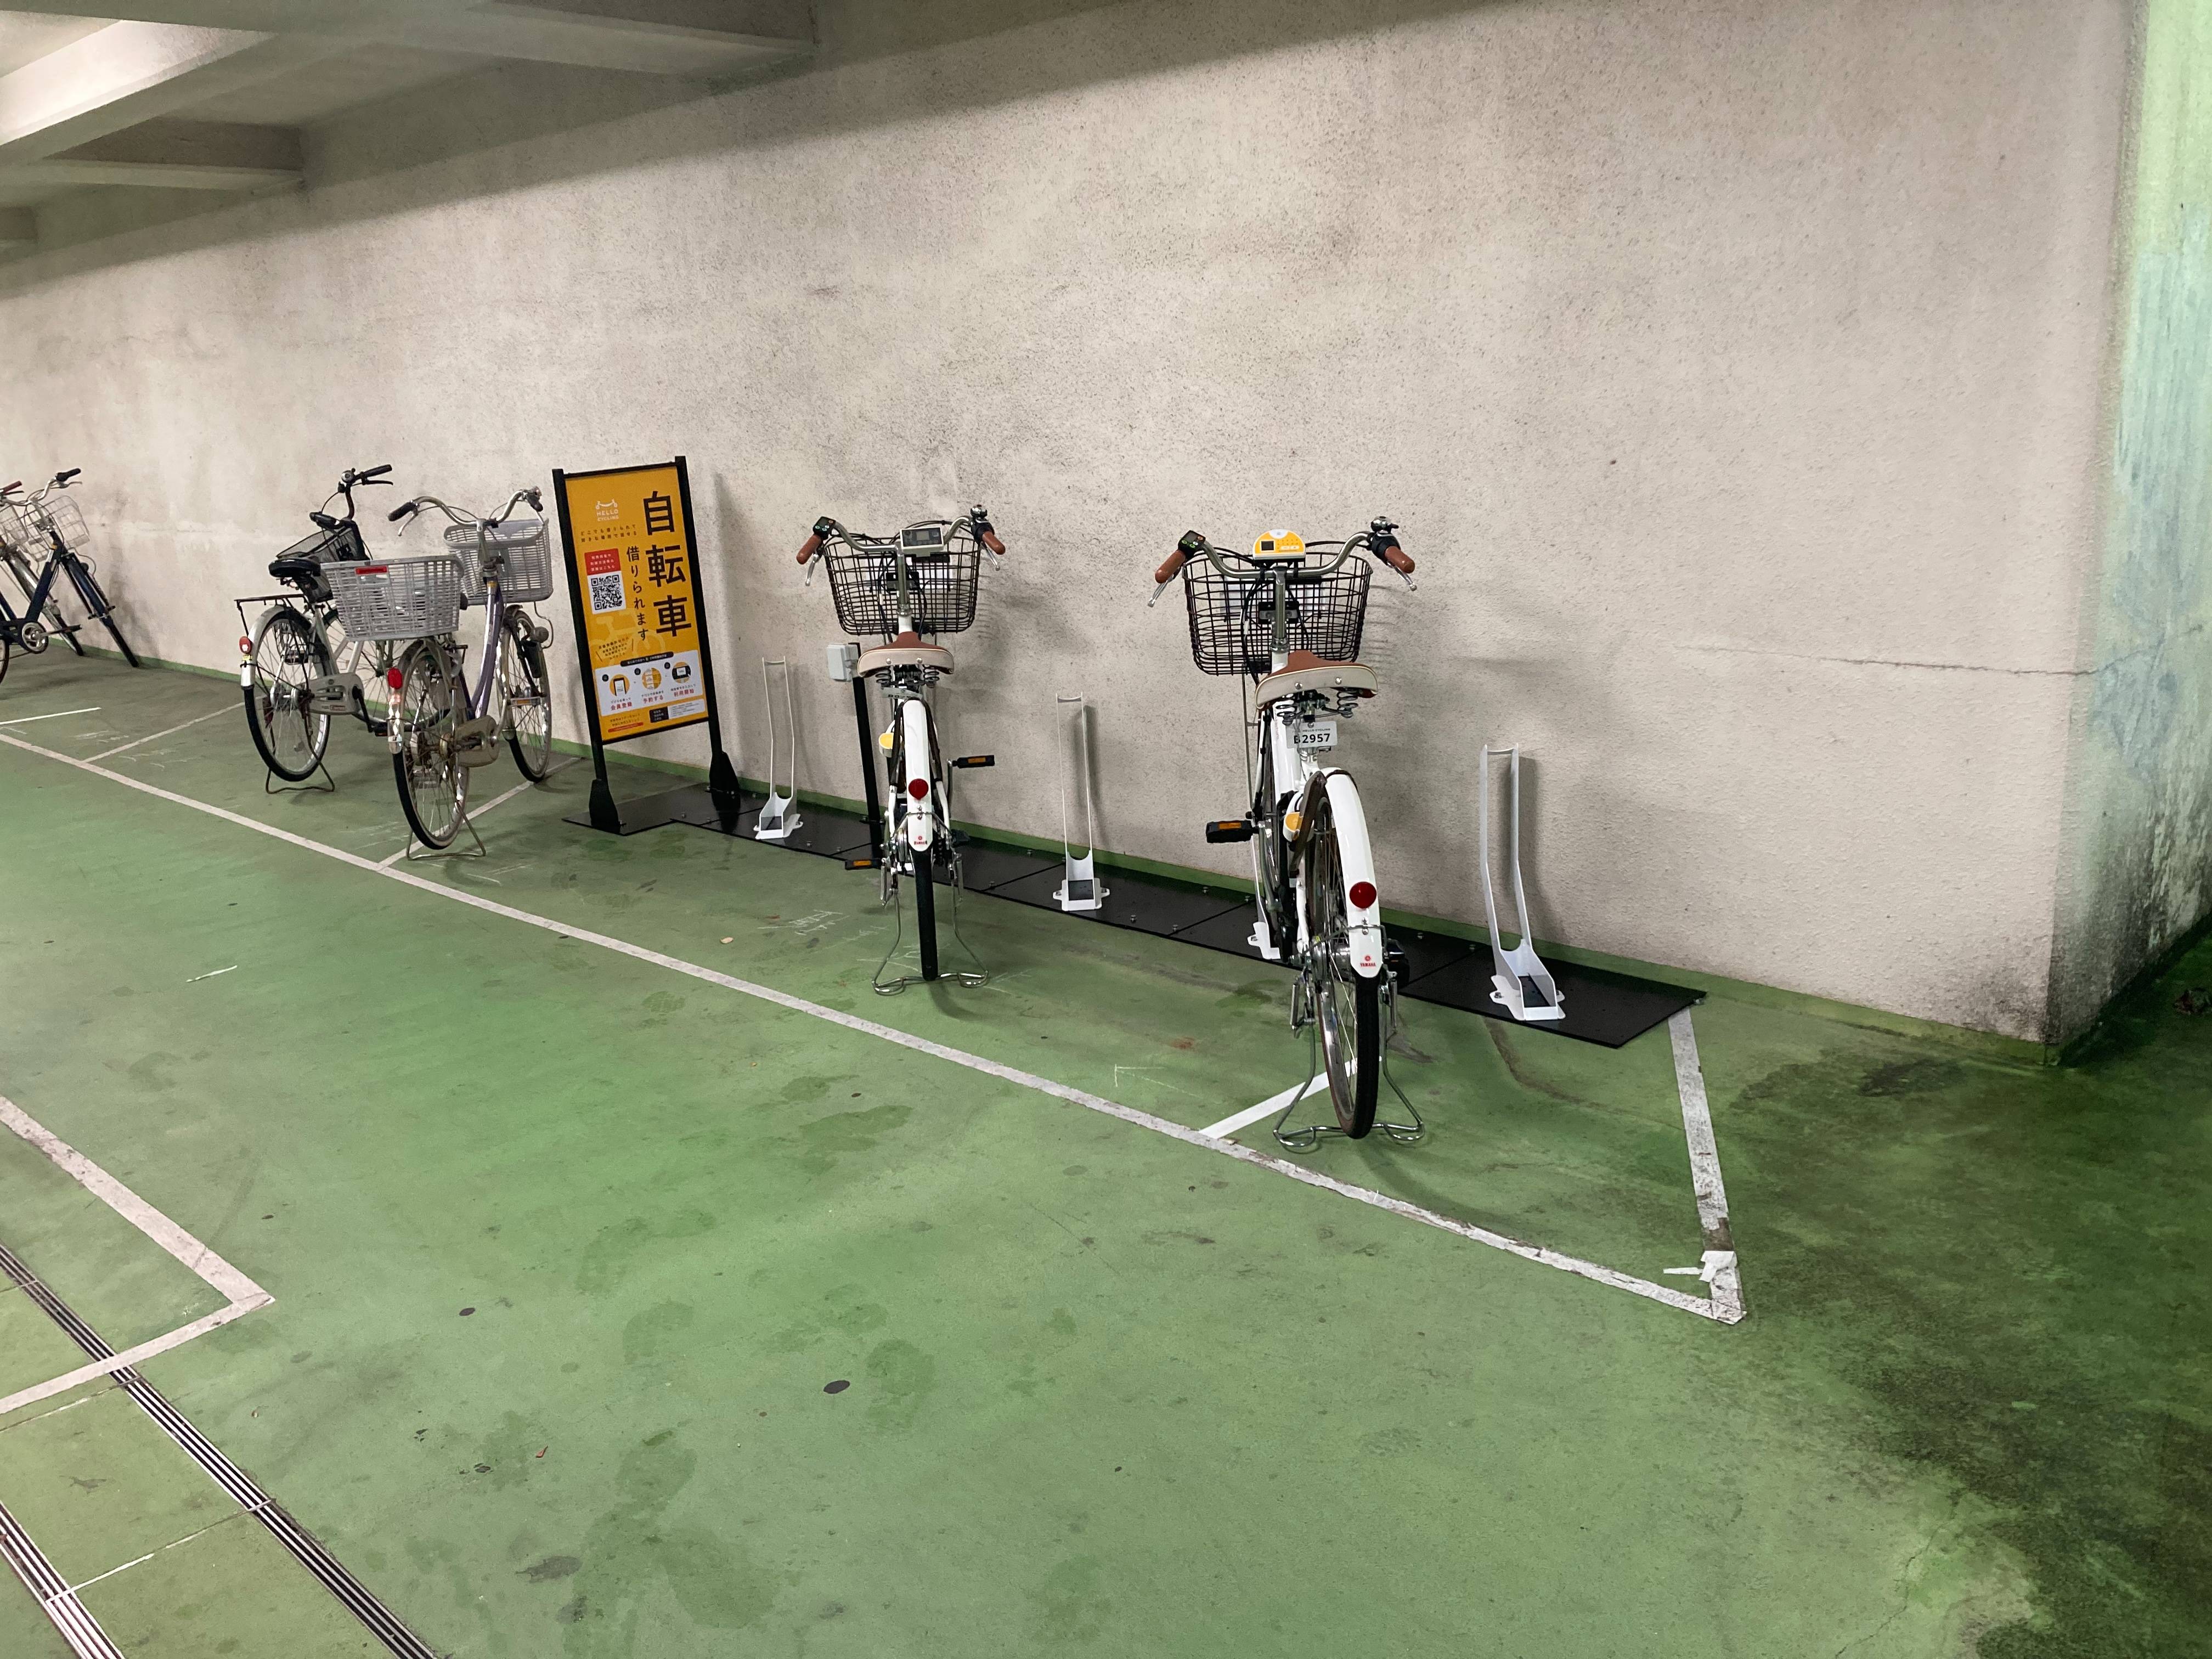 西井堀せせらぎパーク自転車駐車場 (HELLO CYCLING ポート)の画像1